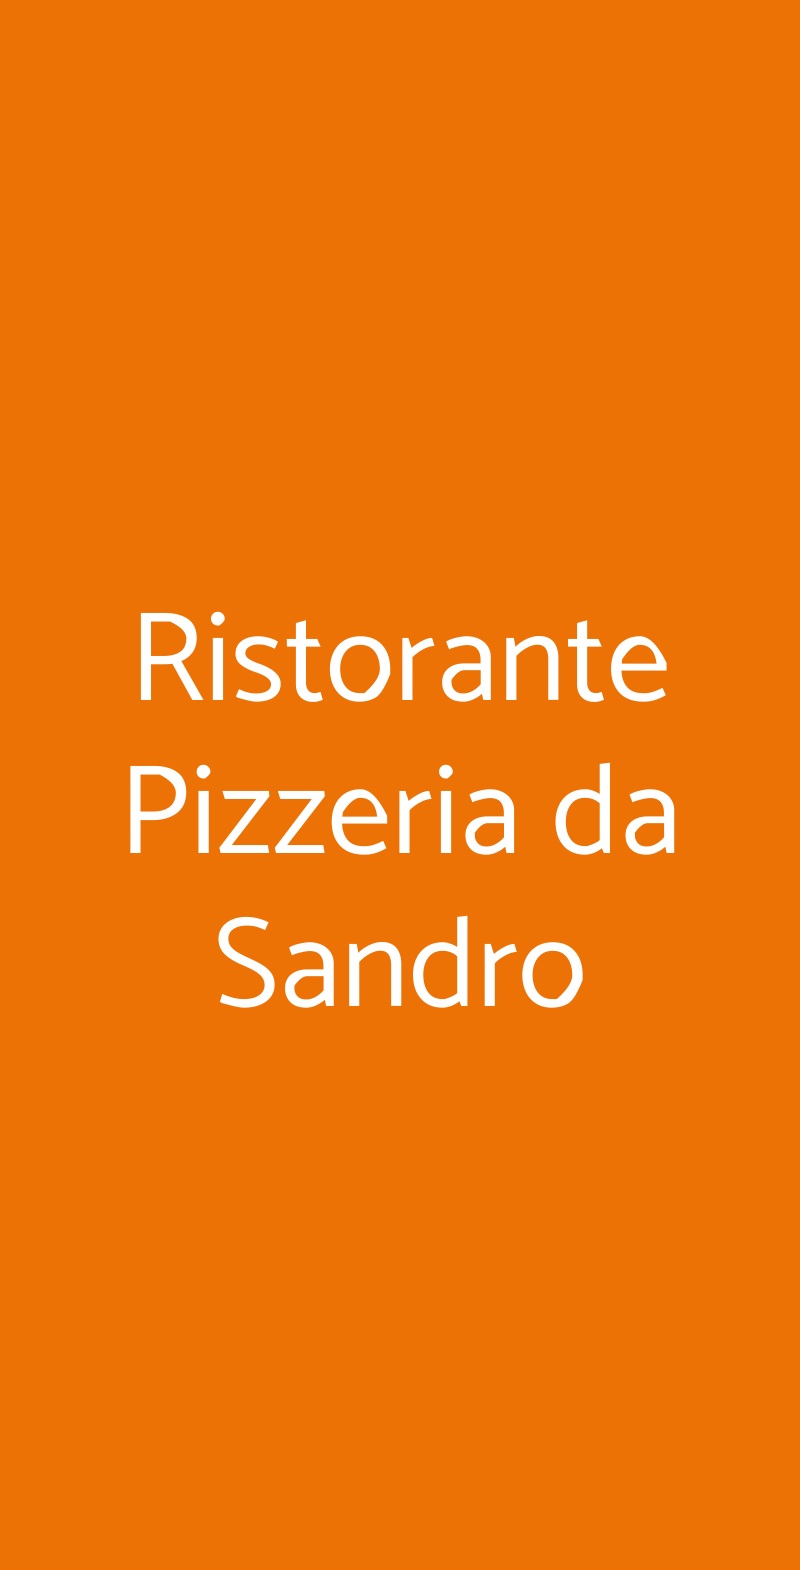 Ristorante Pizzeria da Sandro Venezia menù 1 pagina